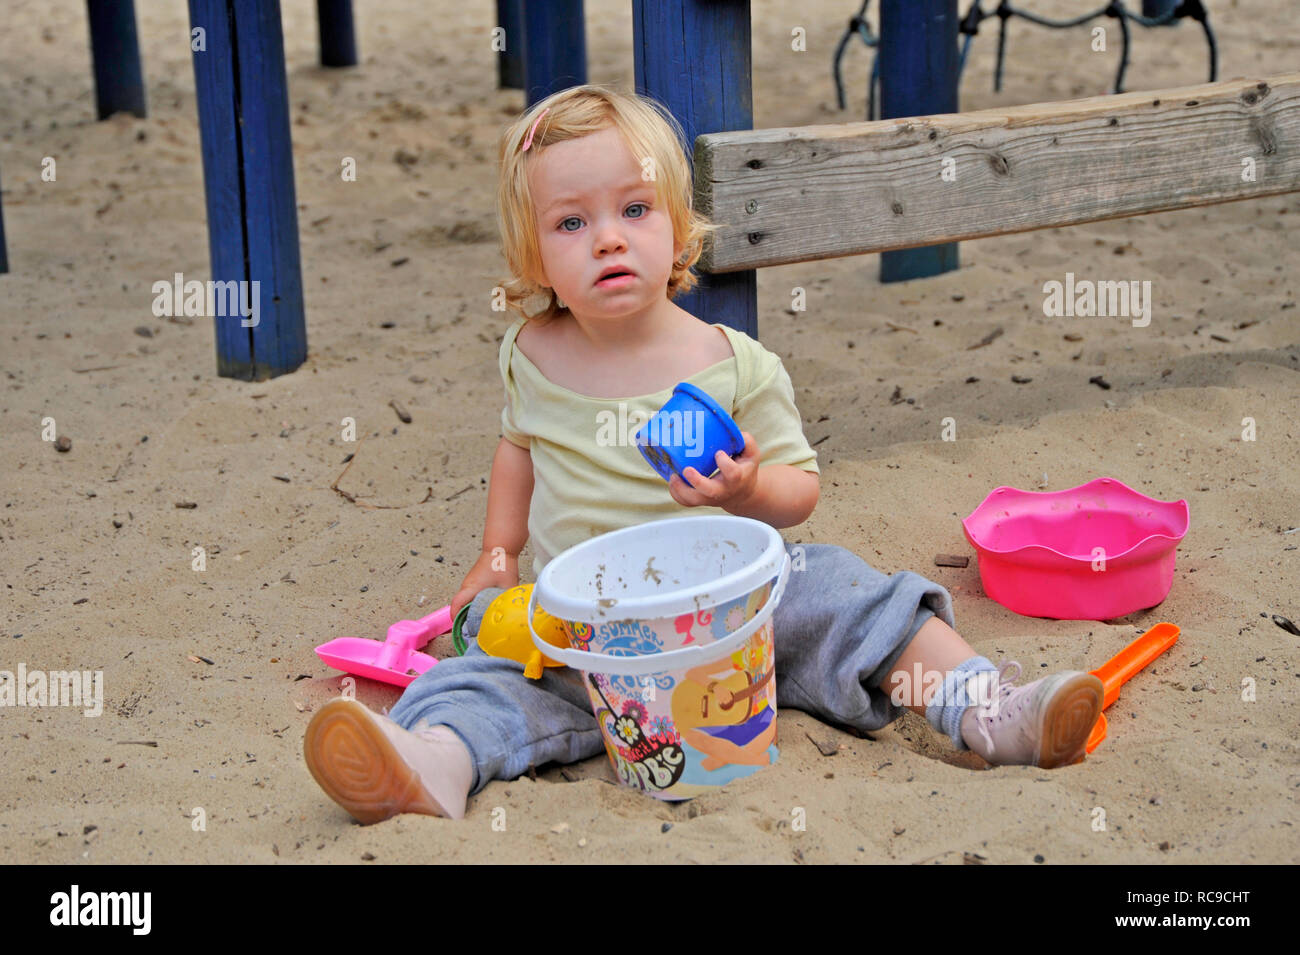 Kleines Mädchen, genre, 2 Jahre alt, auf dem Spielplatz | petit enfant, 2 ans, sur une aire de jeux Banque D'Images